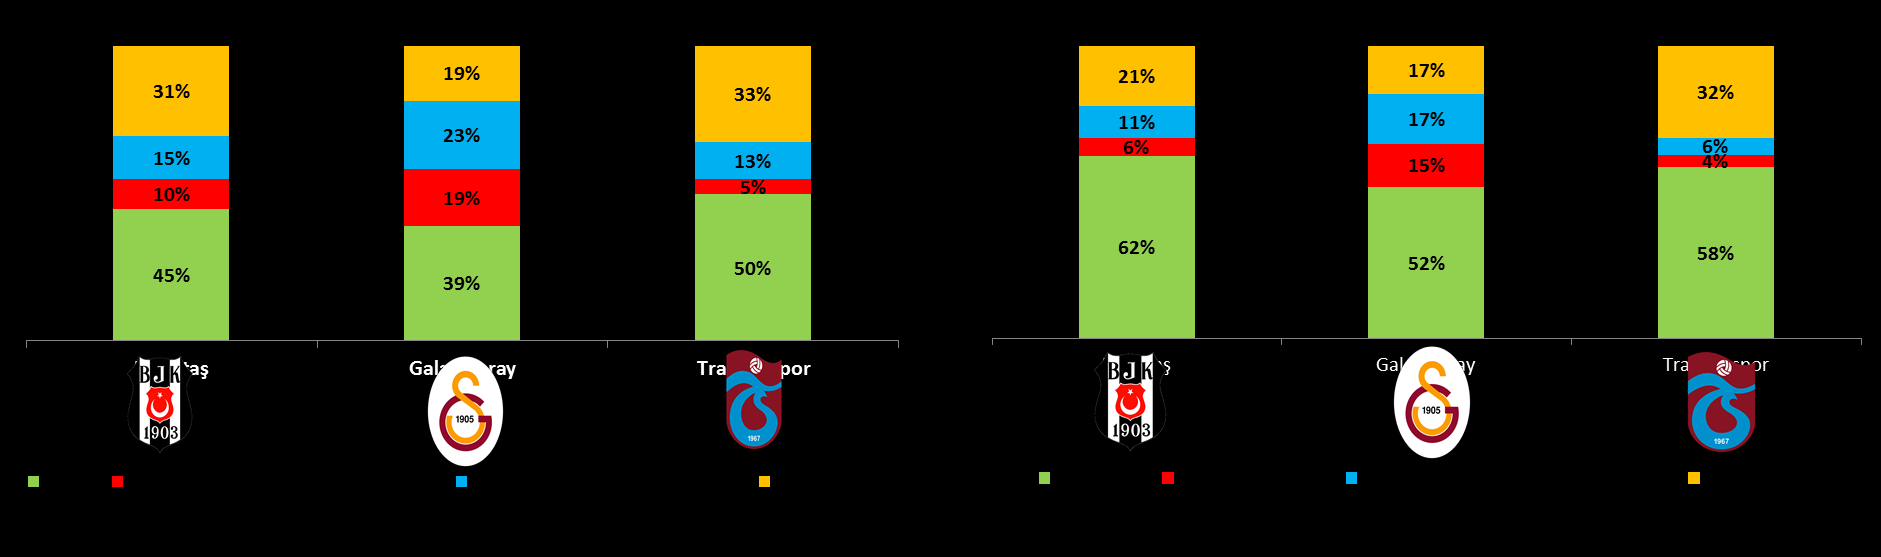 Galatasaray, diğer takımlardan farklı olarak 2014/15 sezonunun 9 aylık döneminde sponsorluk, isim hakkı ve reklam gelirlerinden yayın gelirlerine göre daha çok gelir elde etmiştir.